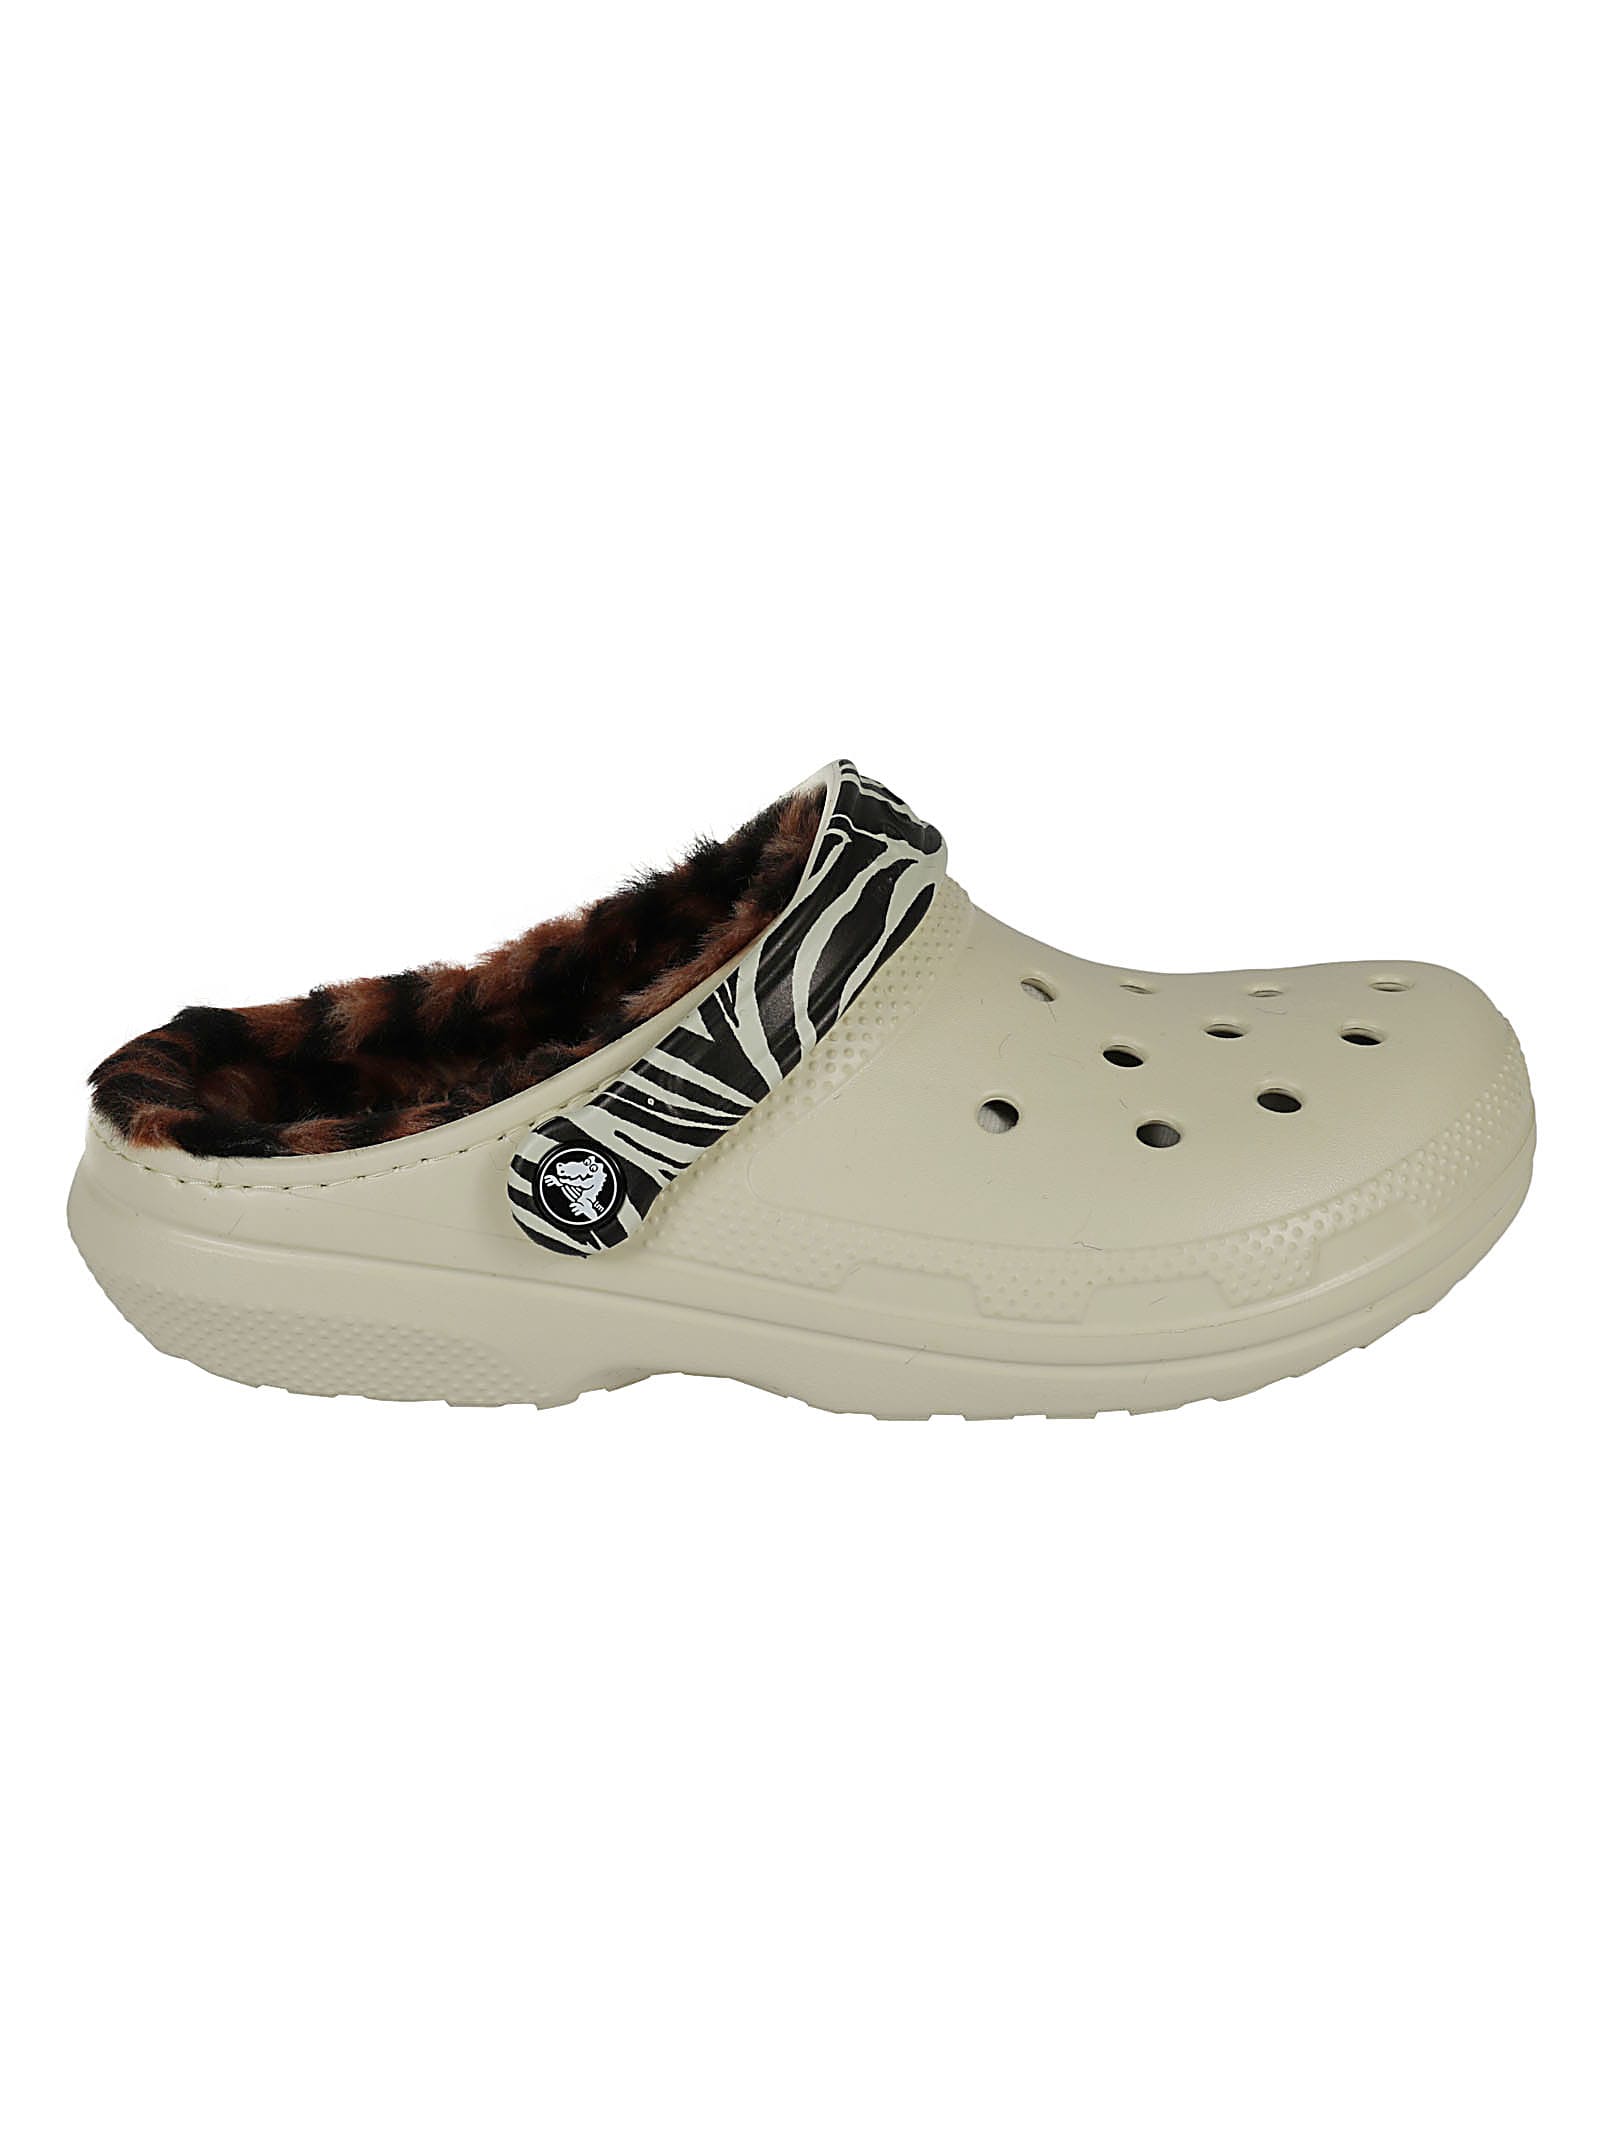 Crocs Classic Animal Remix Clog Shoes